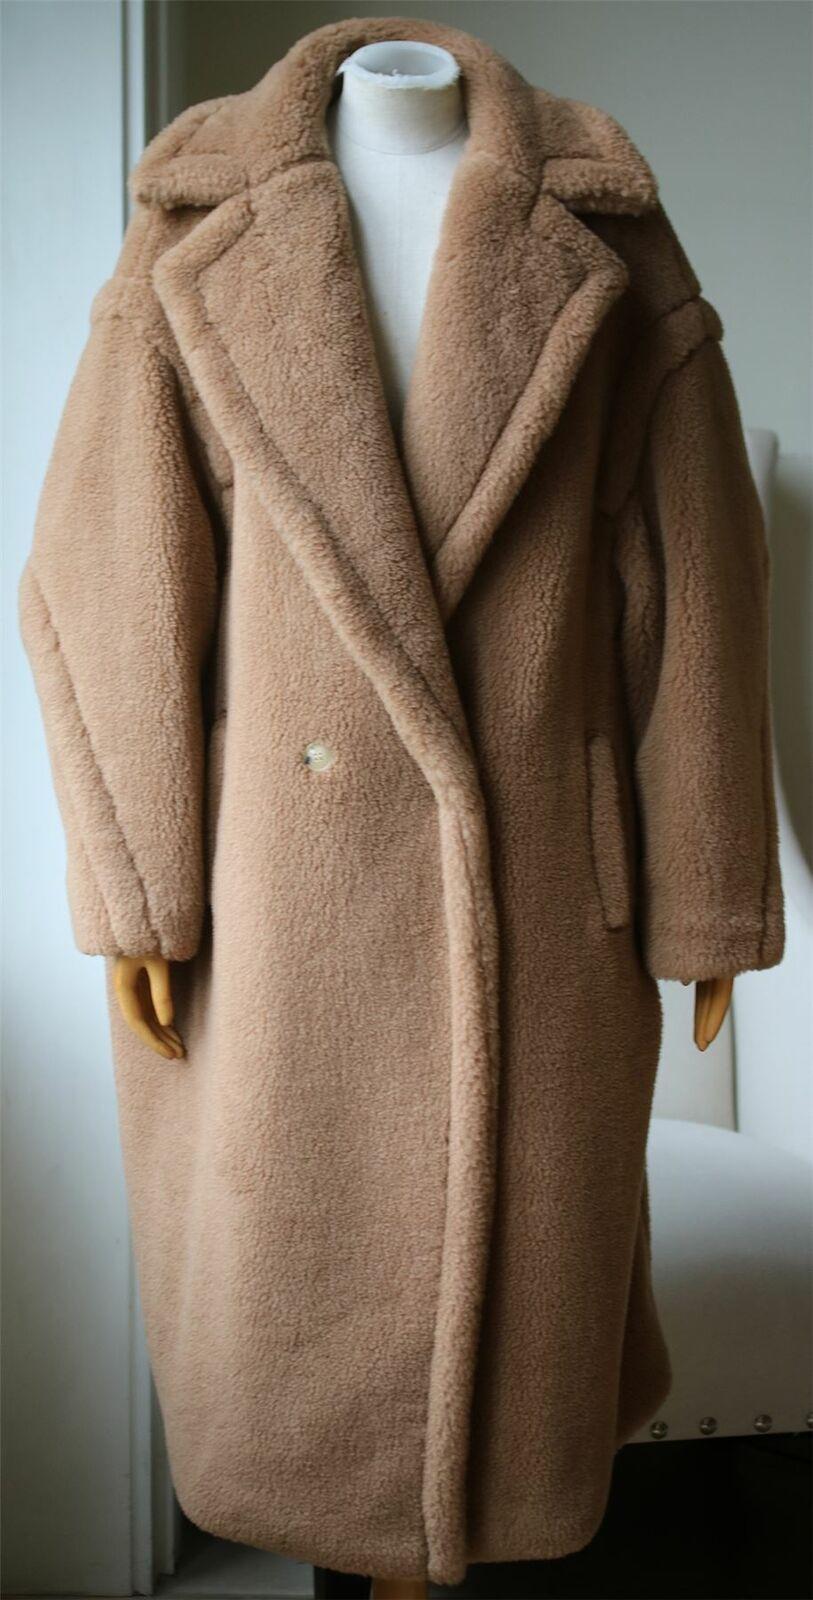 Max Mara Teddy Bear Coat - For Sale on 1stDibs | max mara teddy bear coat  sale, max mara teddy pink, max mara teddy coat